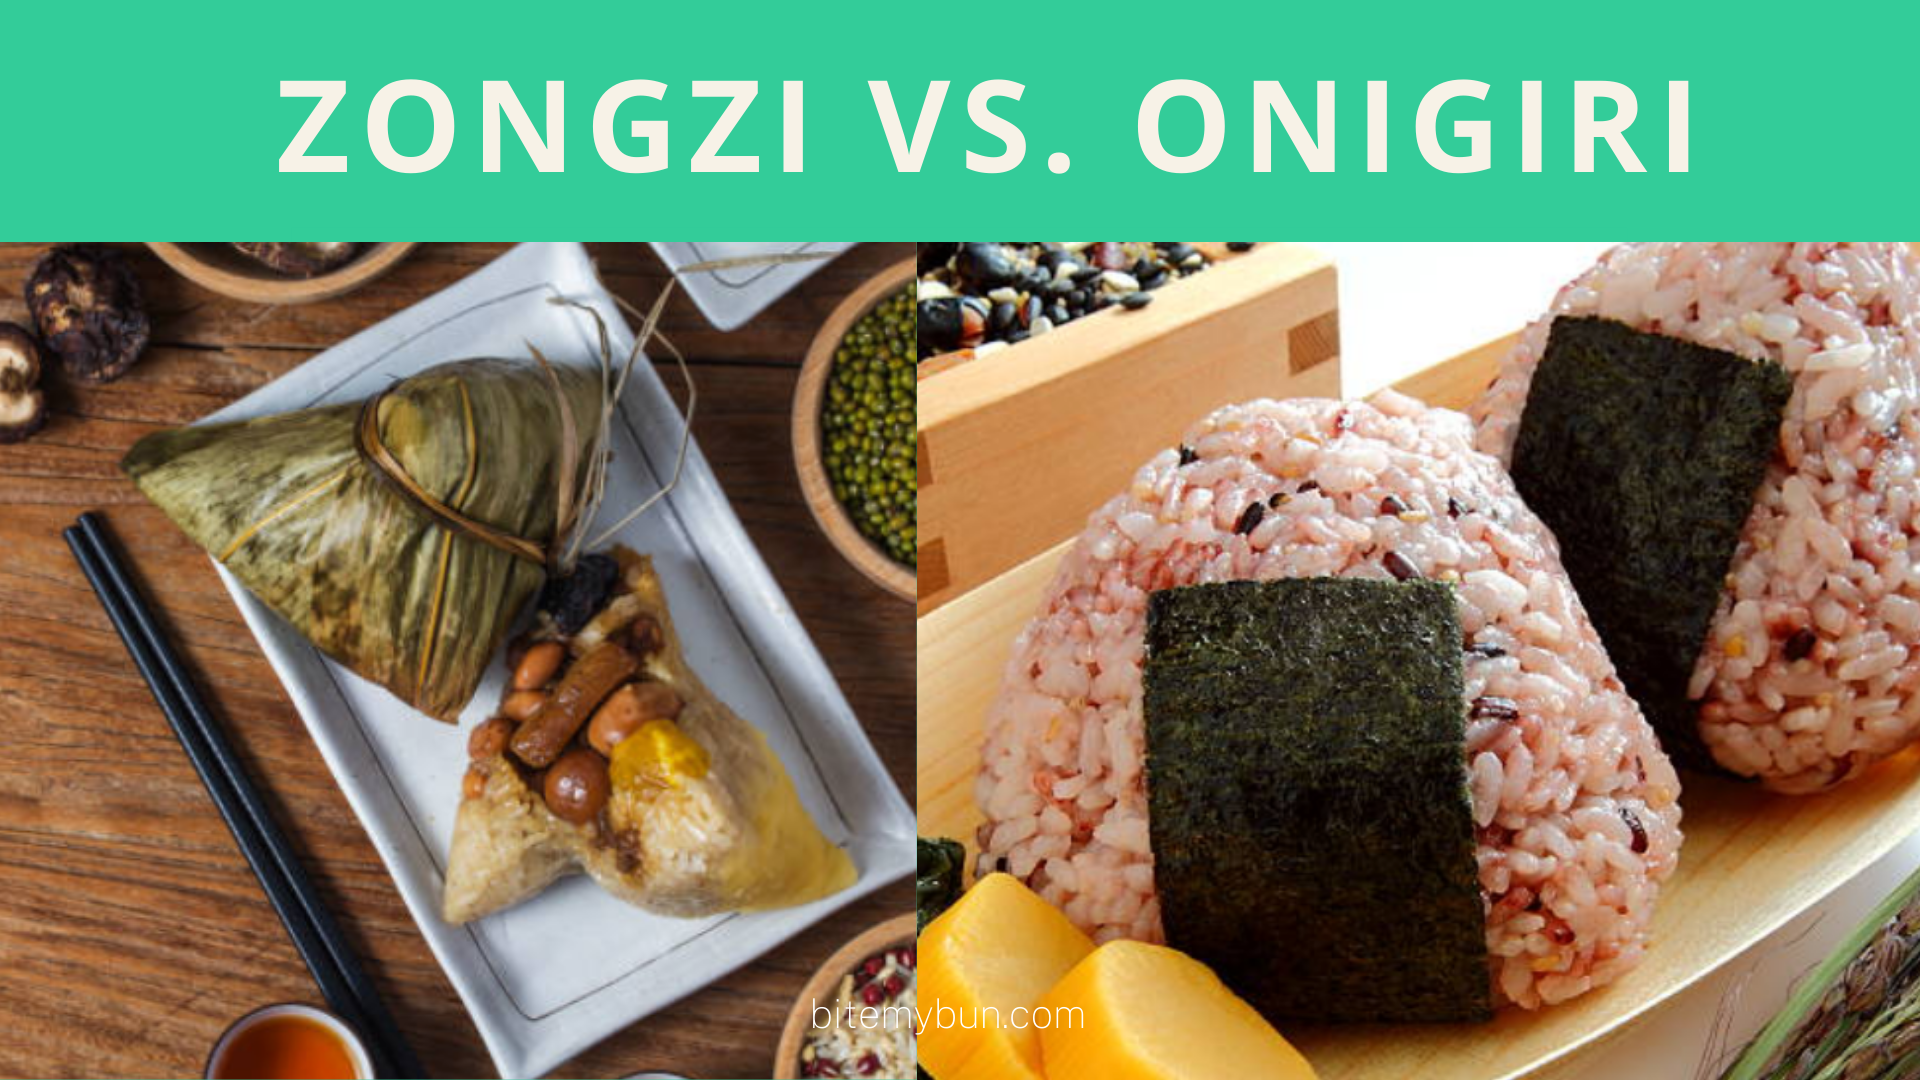 Zongzi vs. onigiri | Mona ke mokhoa oa ho ba arohanya